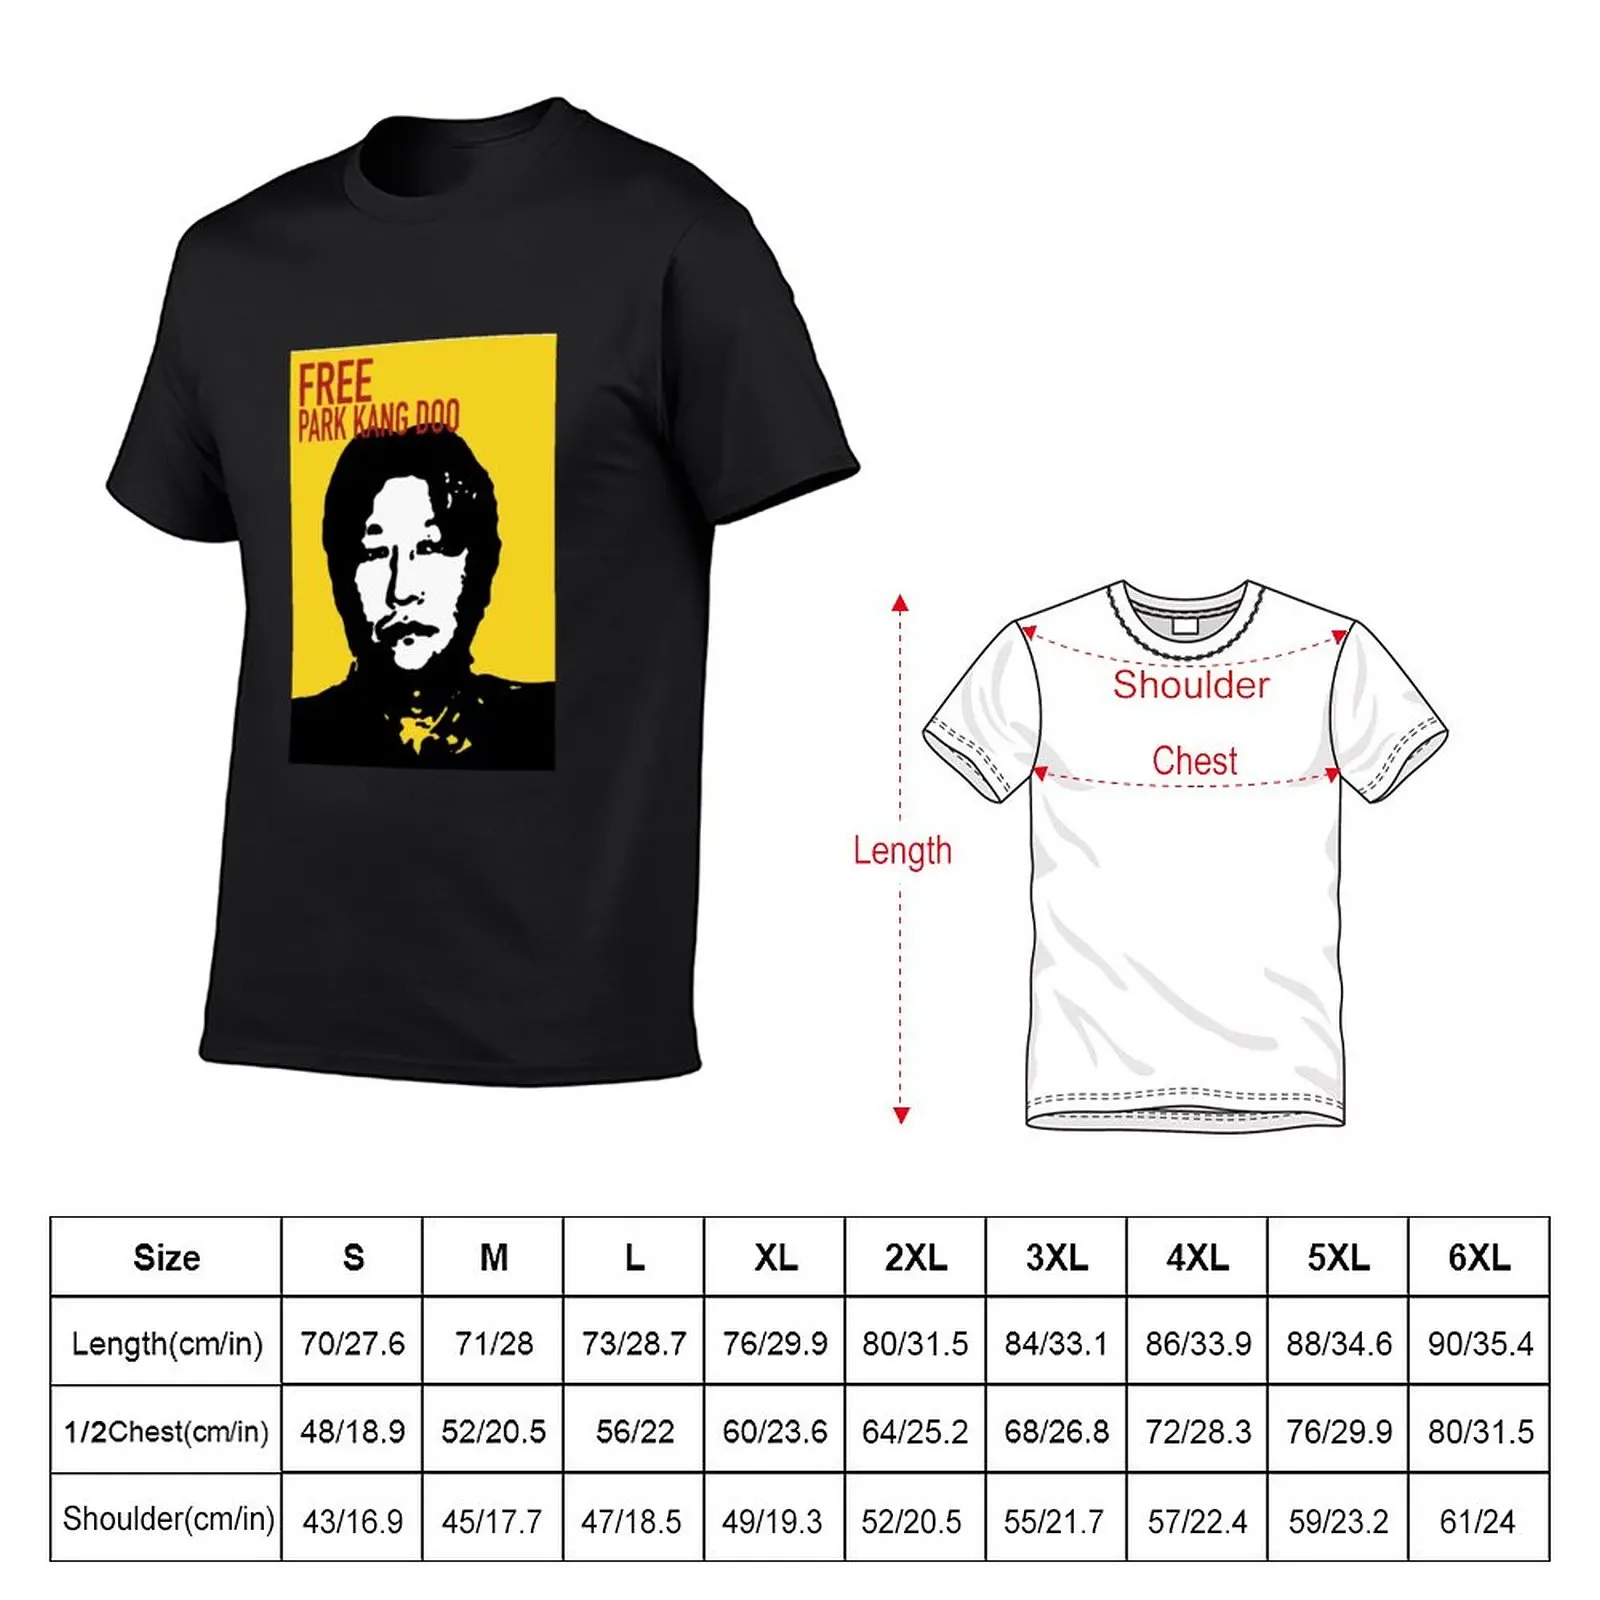 Бесплатная футболка Park Kang Doo, спортивные летние топы, мужские винтажные футболки. Изображение 4